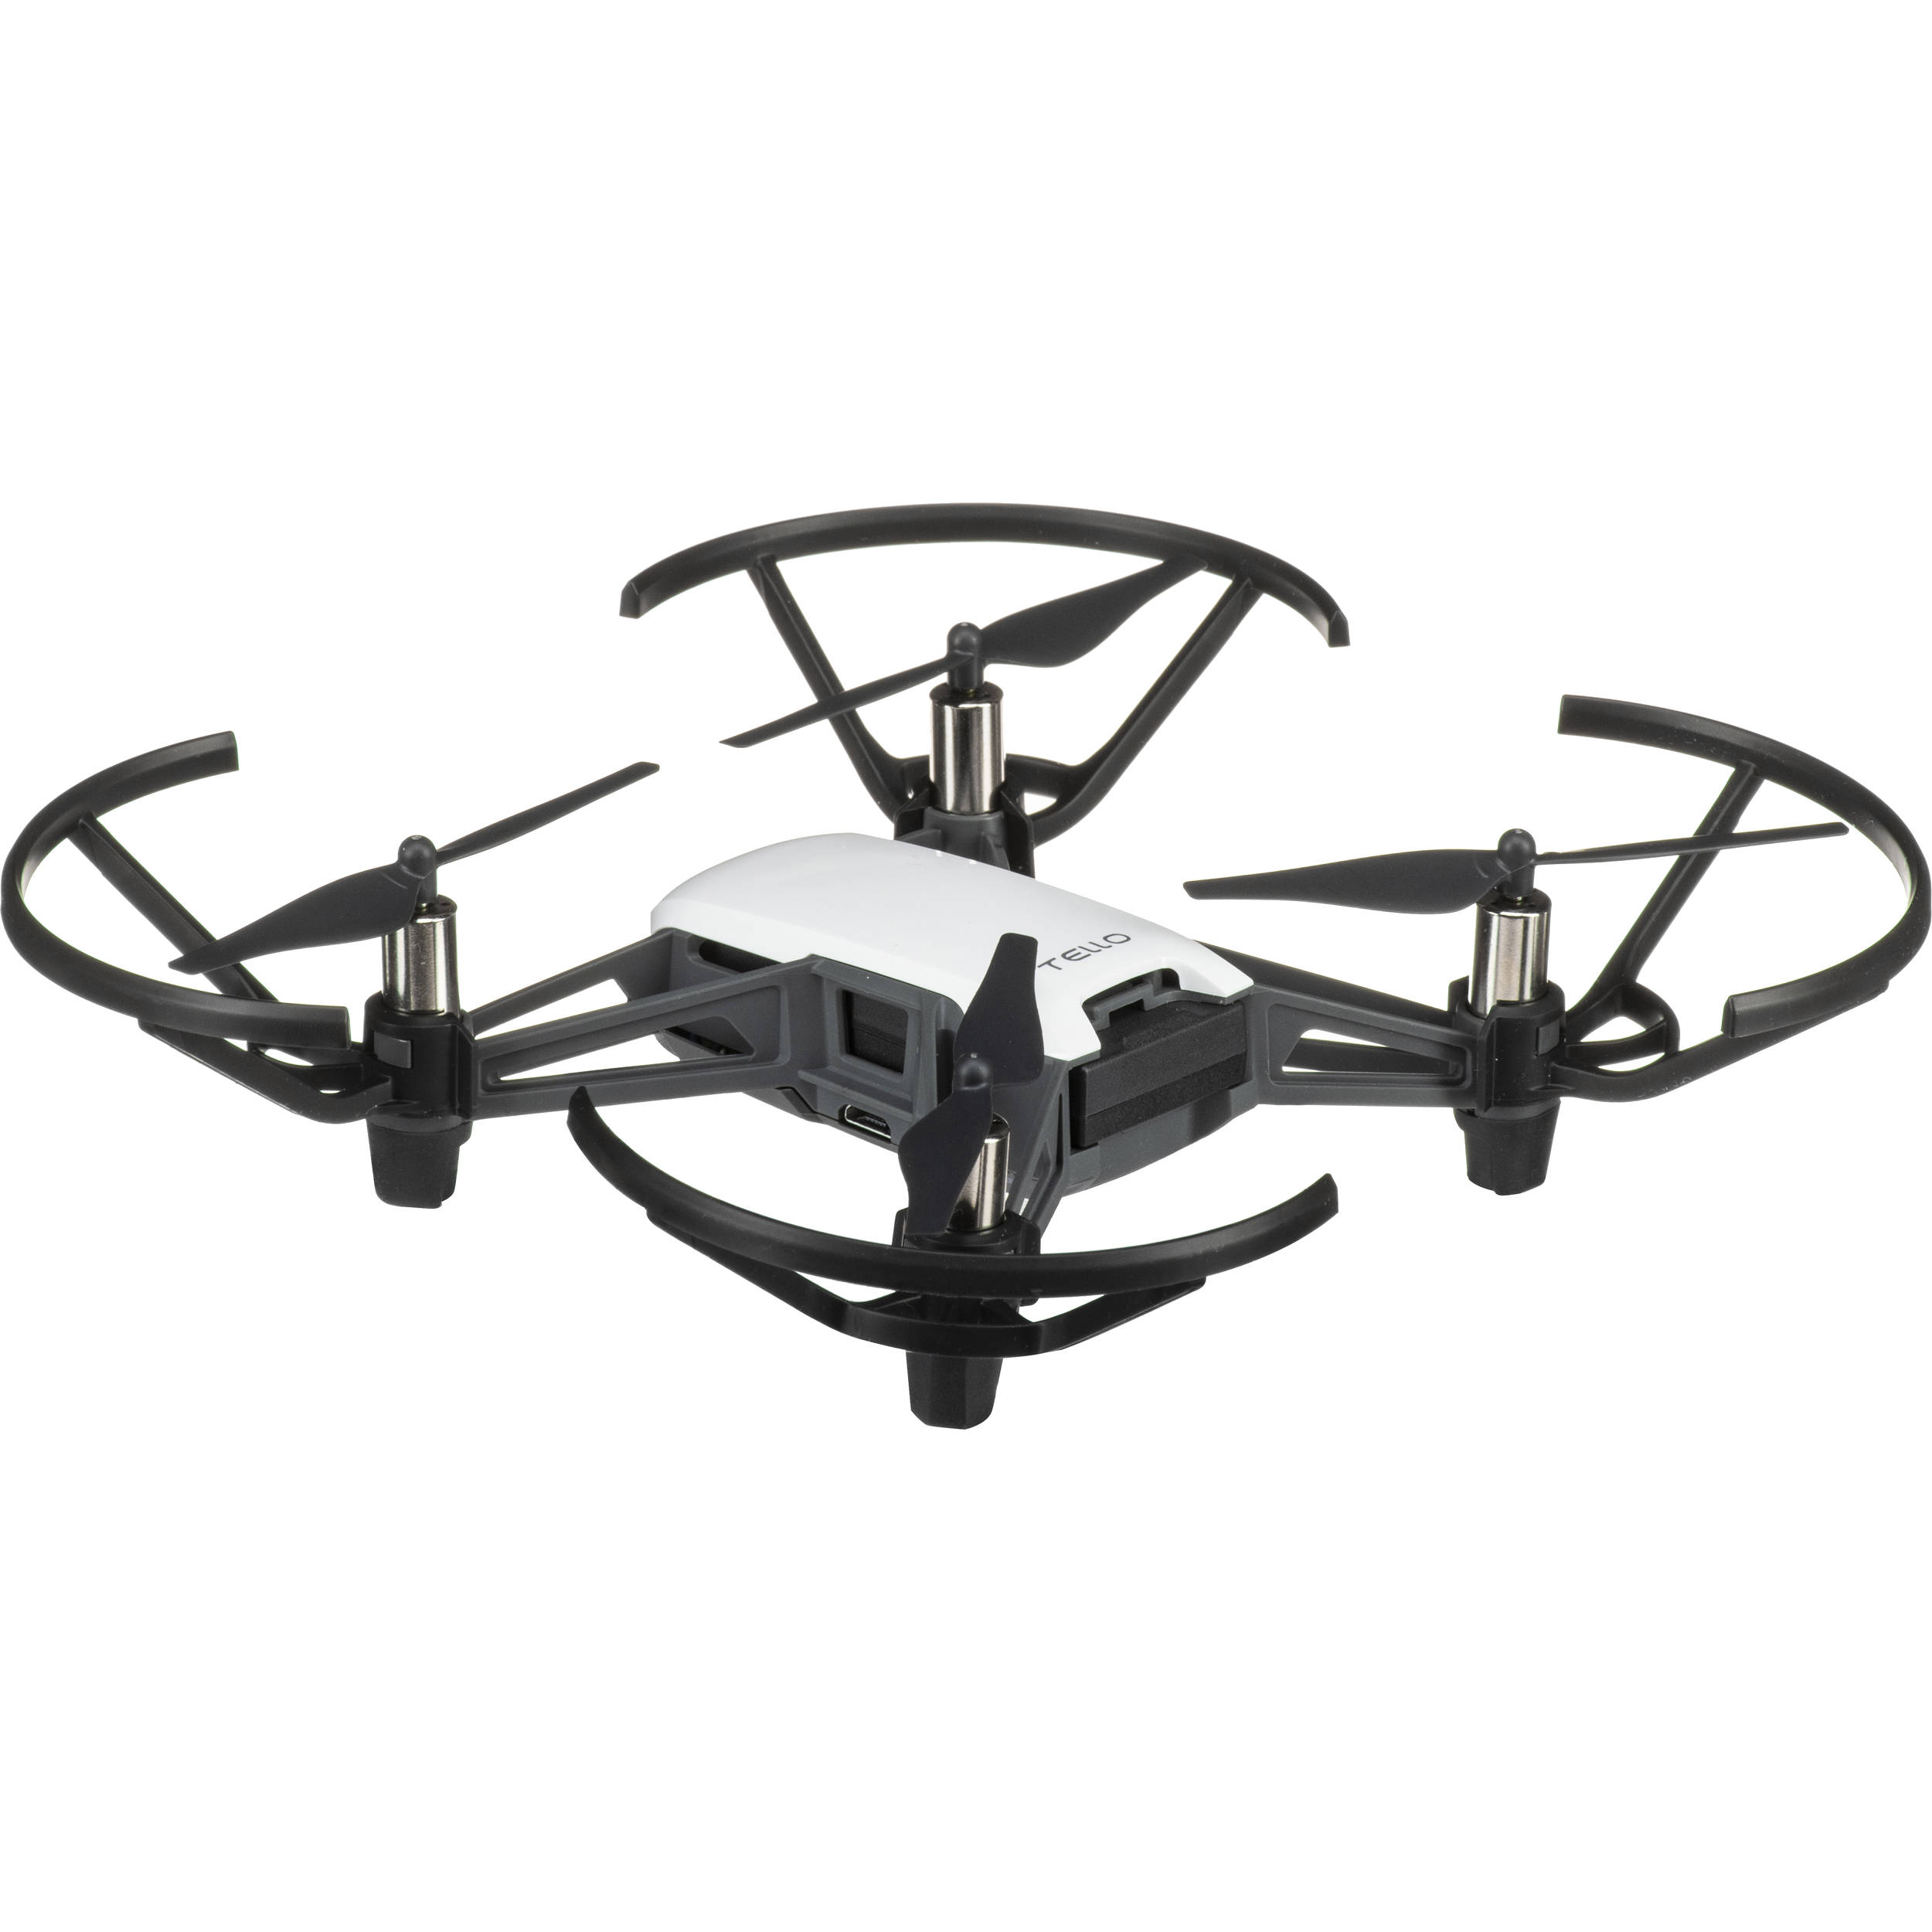 tello quadcopter drone